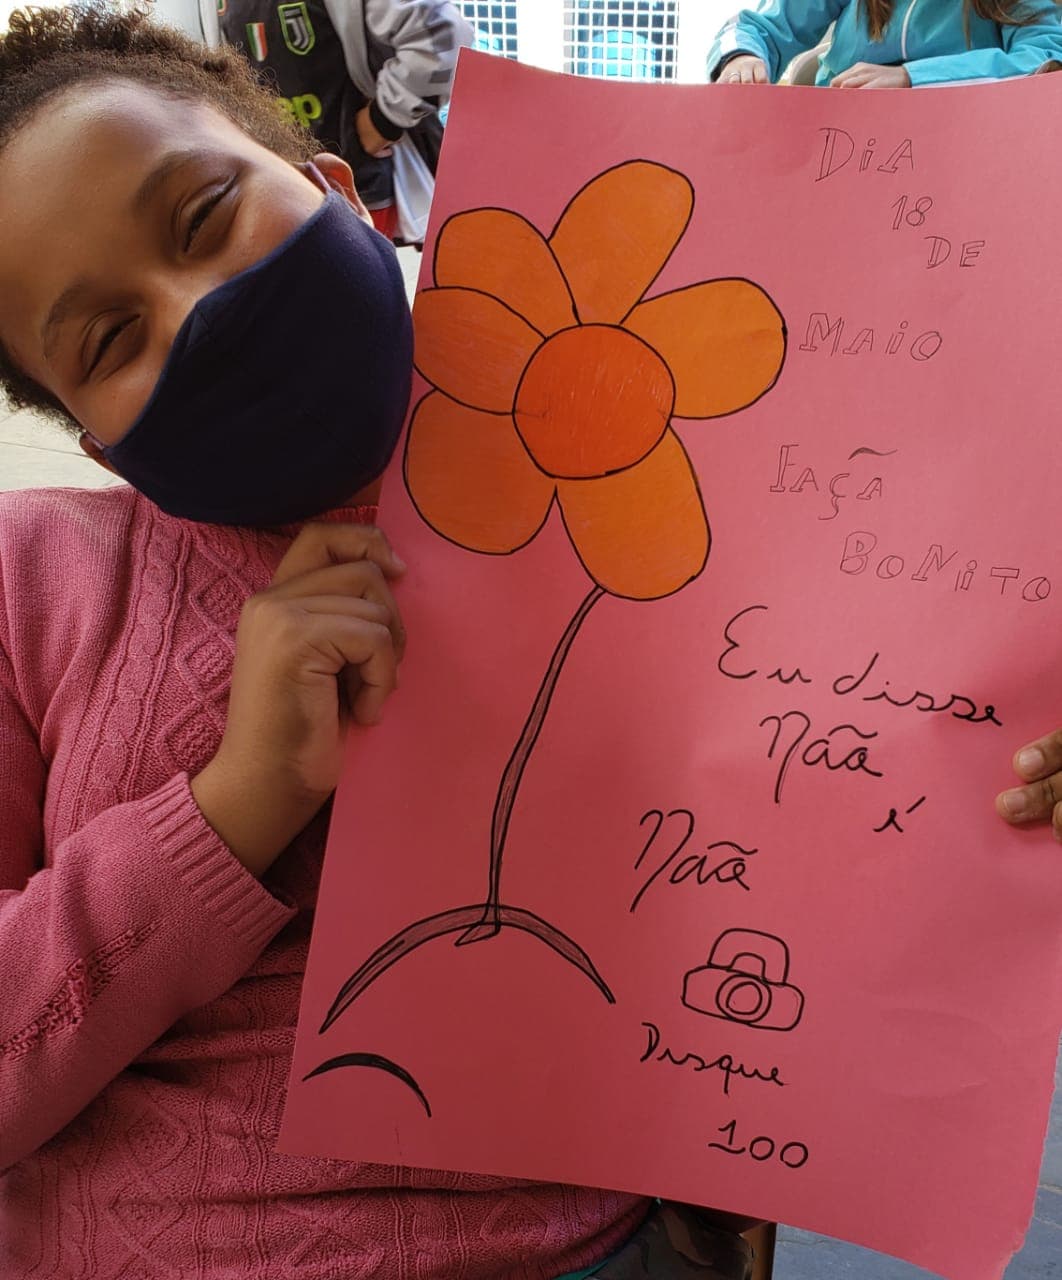 Foto com outras crianças ao fundo e na frente uma criança de mascara e blusa rosa segurando um cartaz rosa com um desenho de flor escrito de preto “Dia 18 de maio. Faça Bonito. Eu disse não é não. Disque 100”.